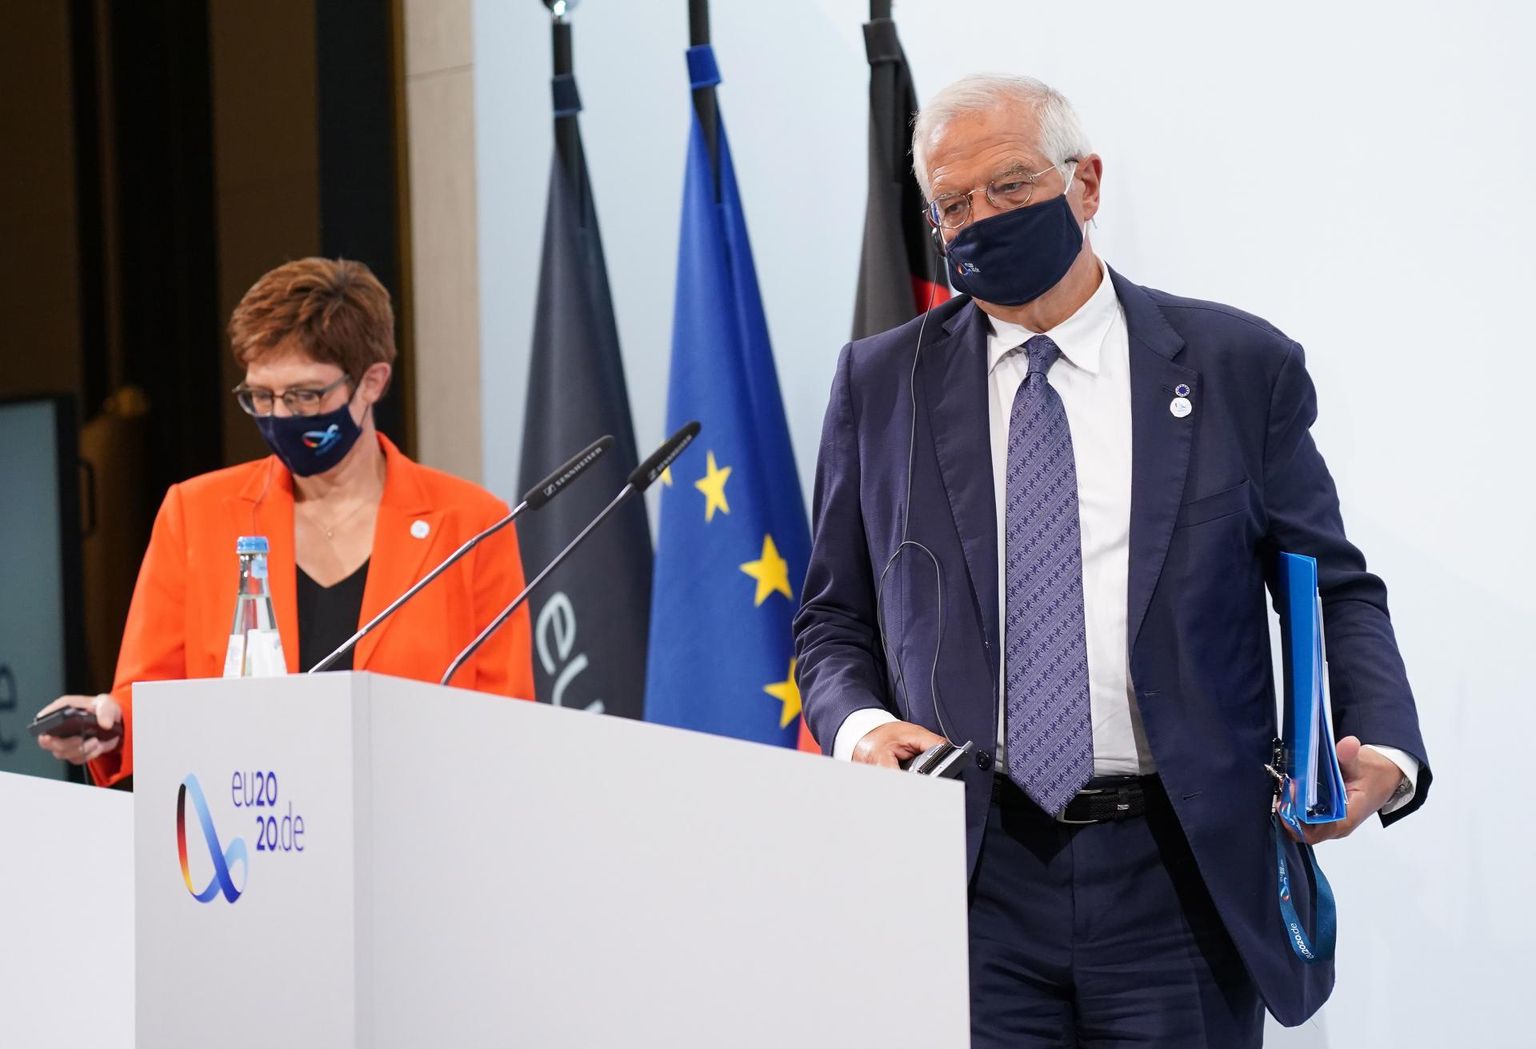 Saksa kaitseminister Annegret Kramp-Karrenbauer ja ELi kõrge esindaja Josep Borrell eileõhtusel pressikonverentsil.